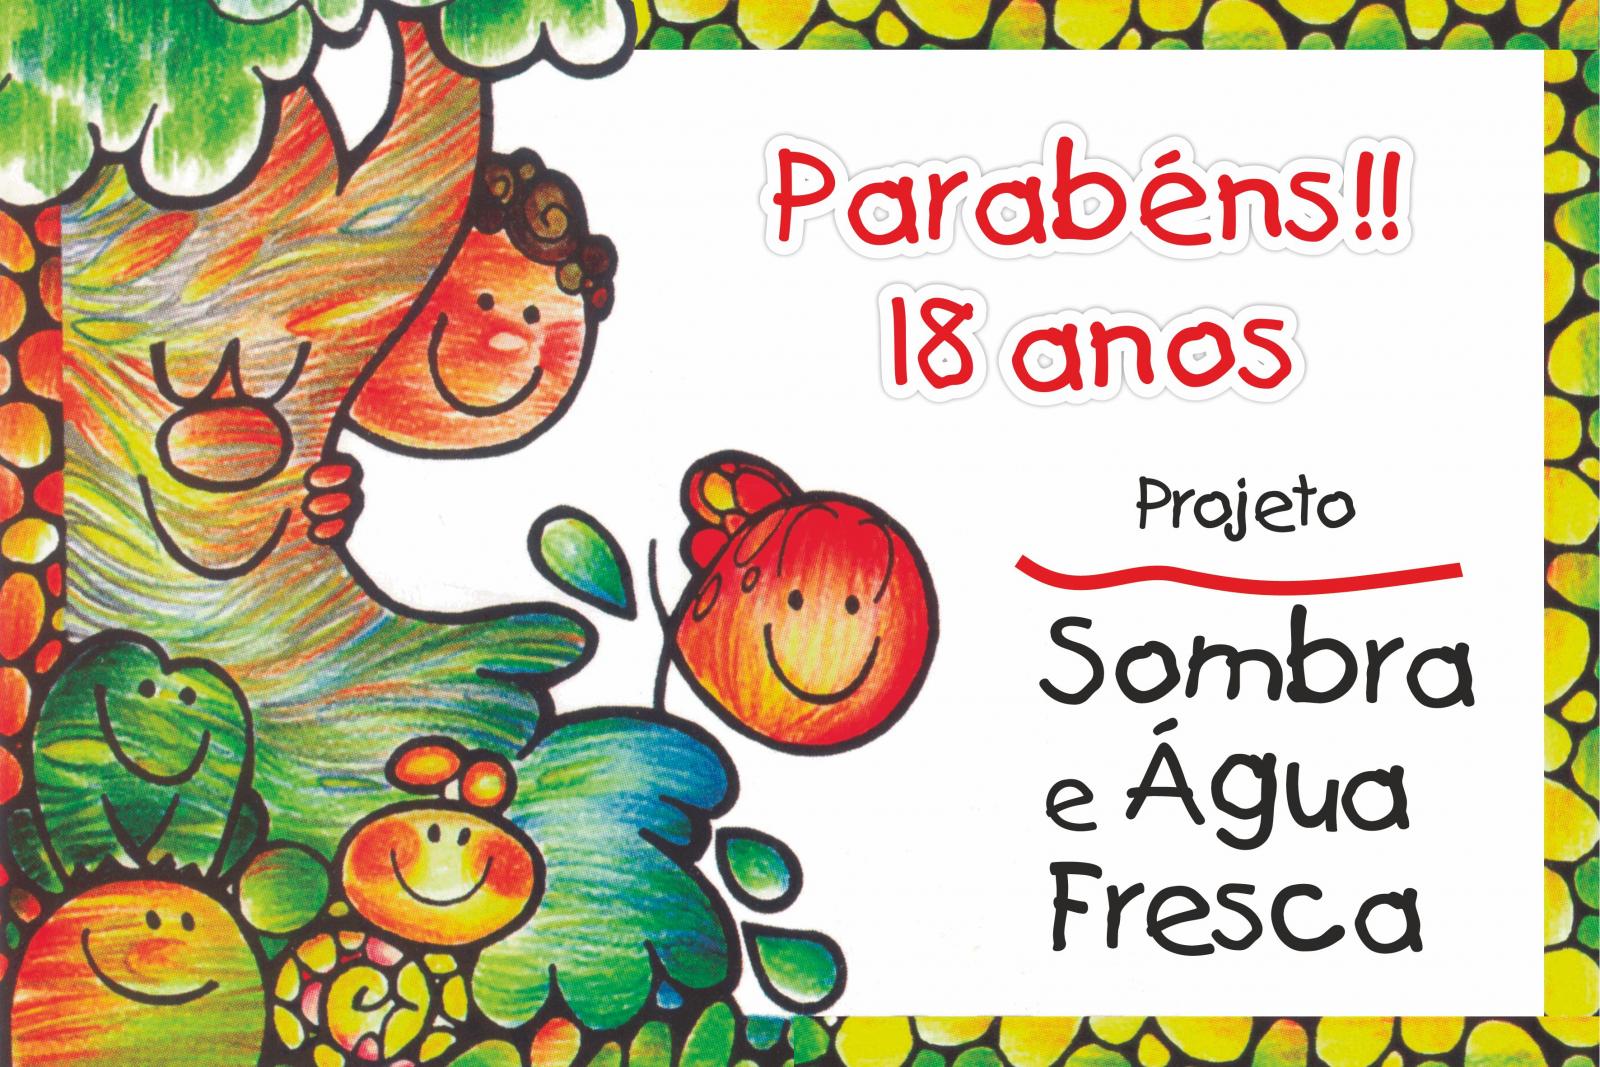 Projeto Sombra e Água Fresca (SAF) celebra 18 anos em outubro